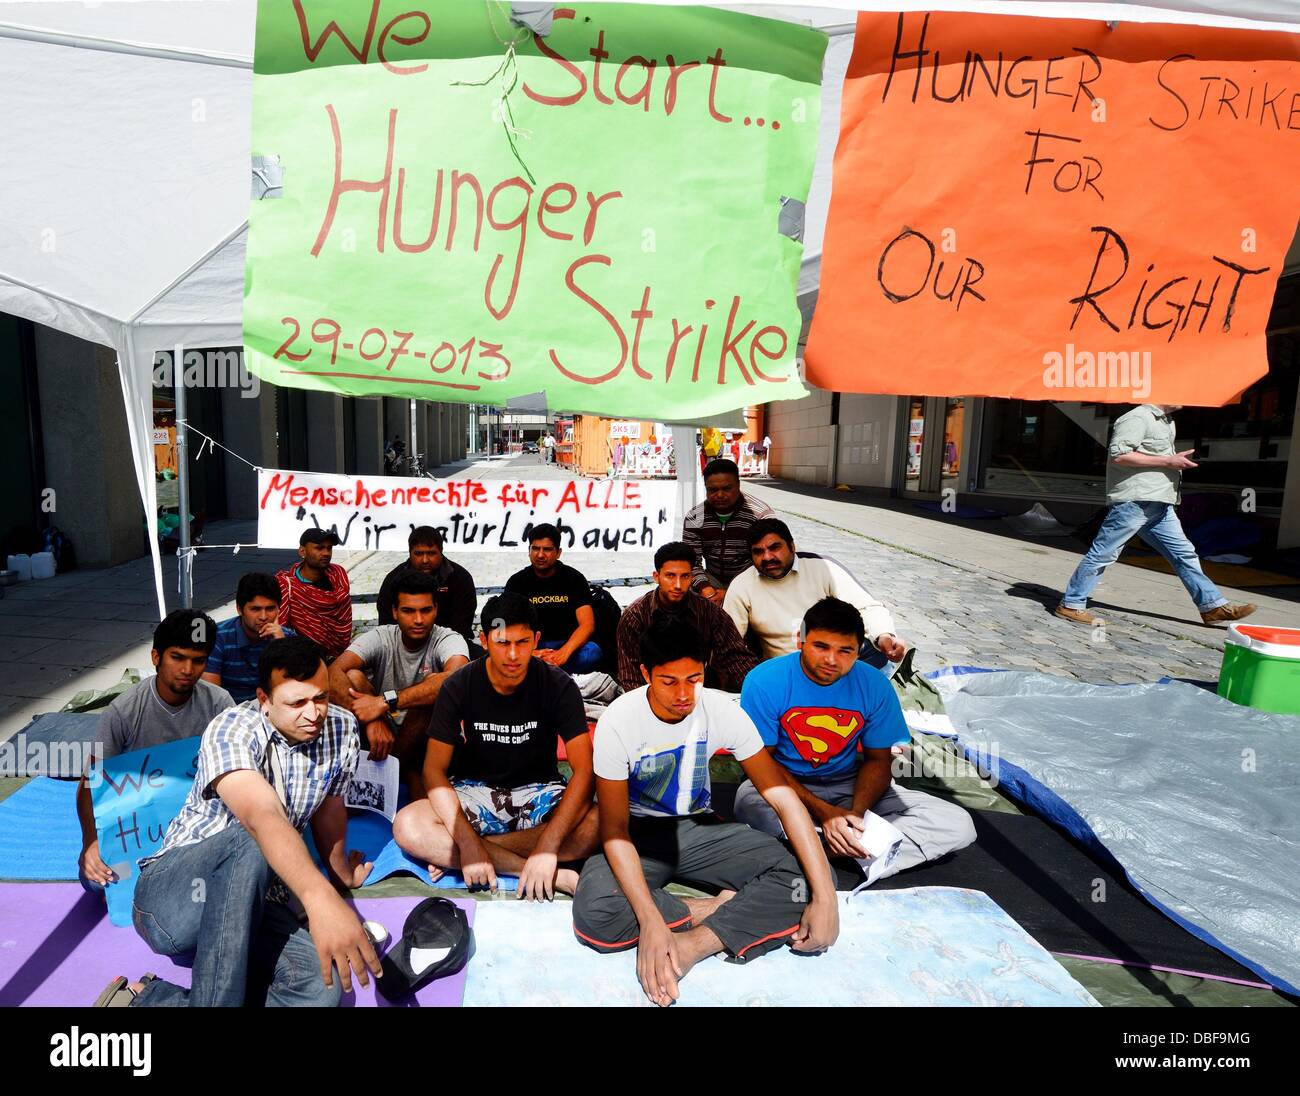 Flüchtlinge zu inszenieren ein Sit-in in einer Fußgängerzone in der Innenstadt von Stuttgart, Deutschland, 30. Juli 2013. Nach zwei Wochen der Proteste gegen ihre Lebensbedingungen in der Main-Tauber-Kreises haben 18 Flüchtlinge im Hungerstreik gegangen. Foto: BERND WEISSBROD Stockfoto